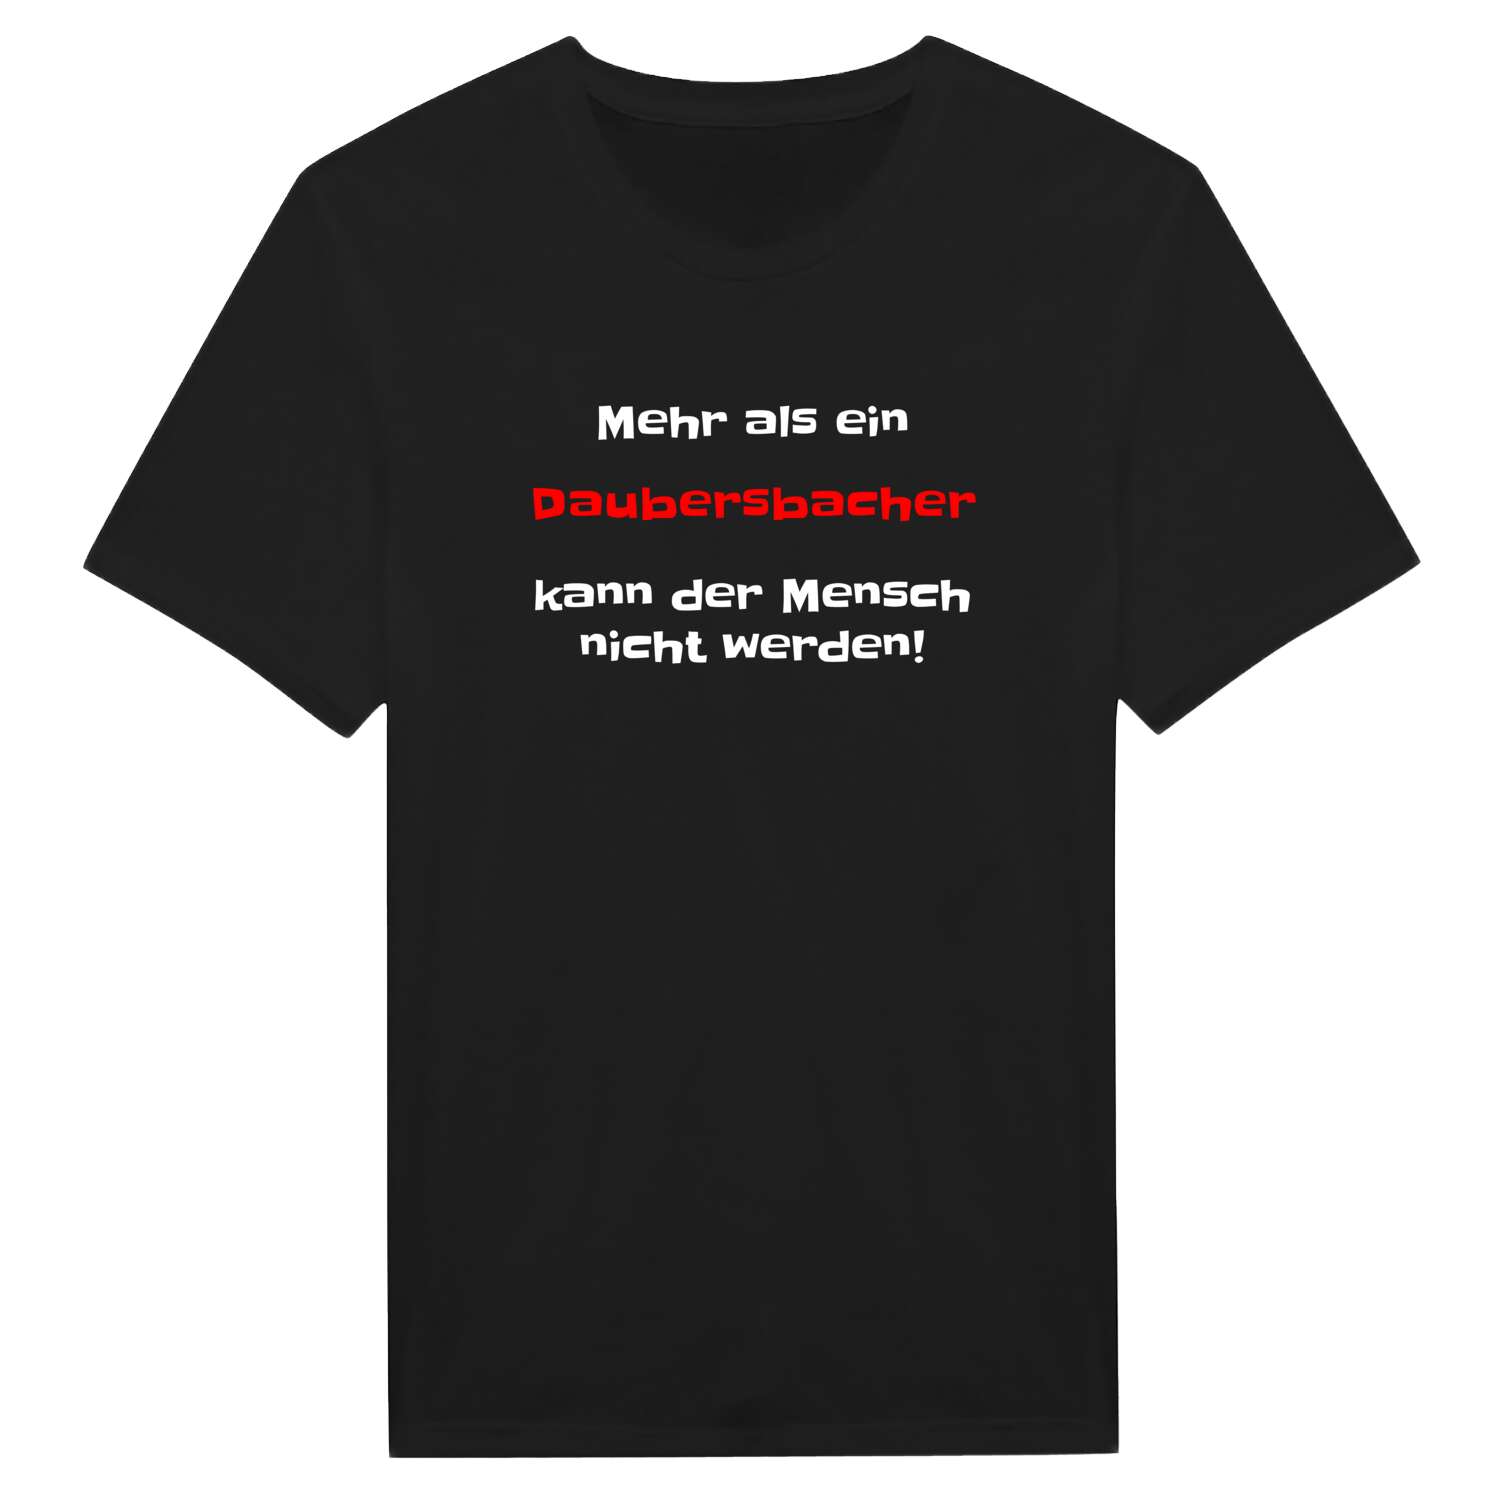 Daubersbach T-Shirt »Mehr als ein«